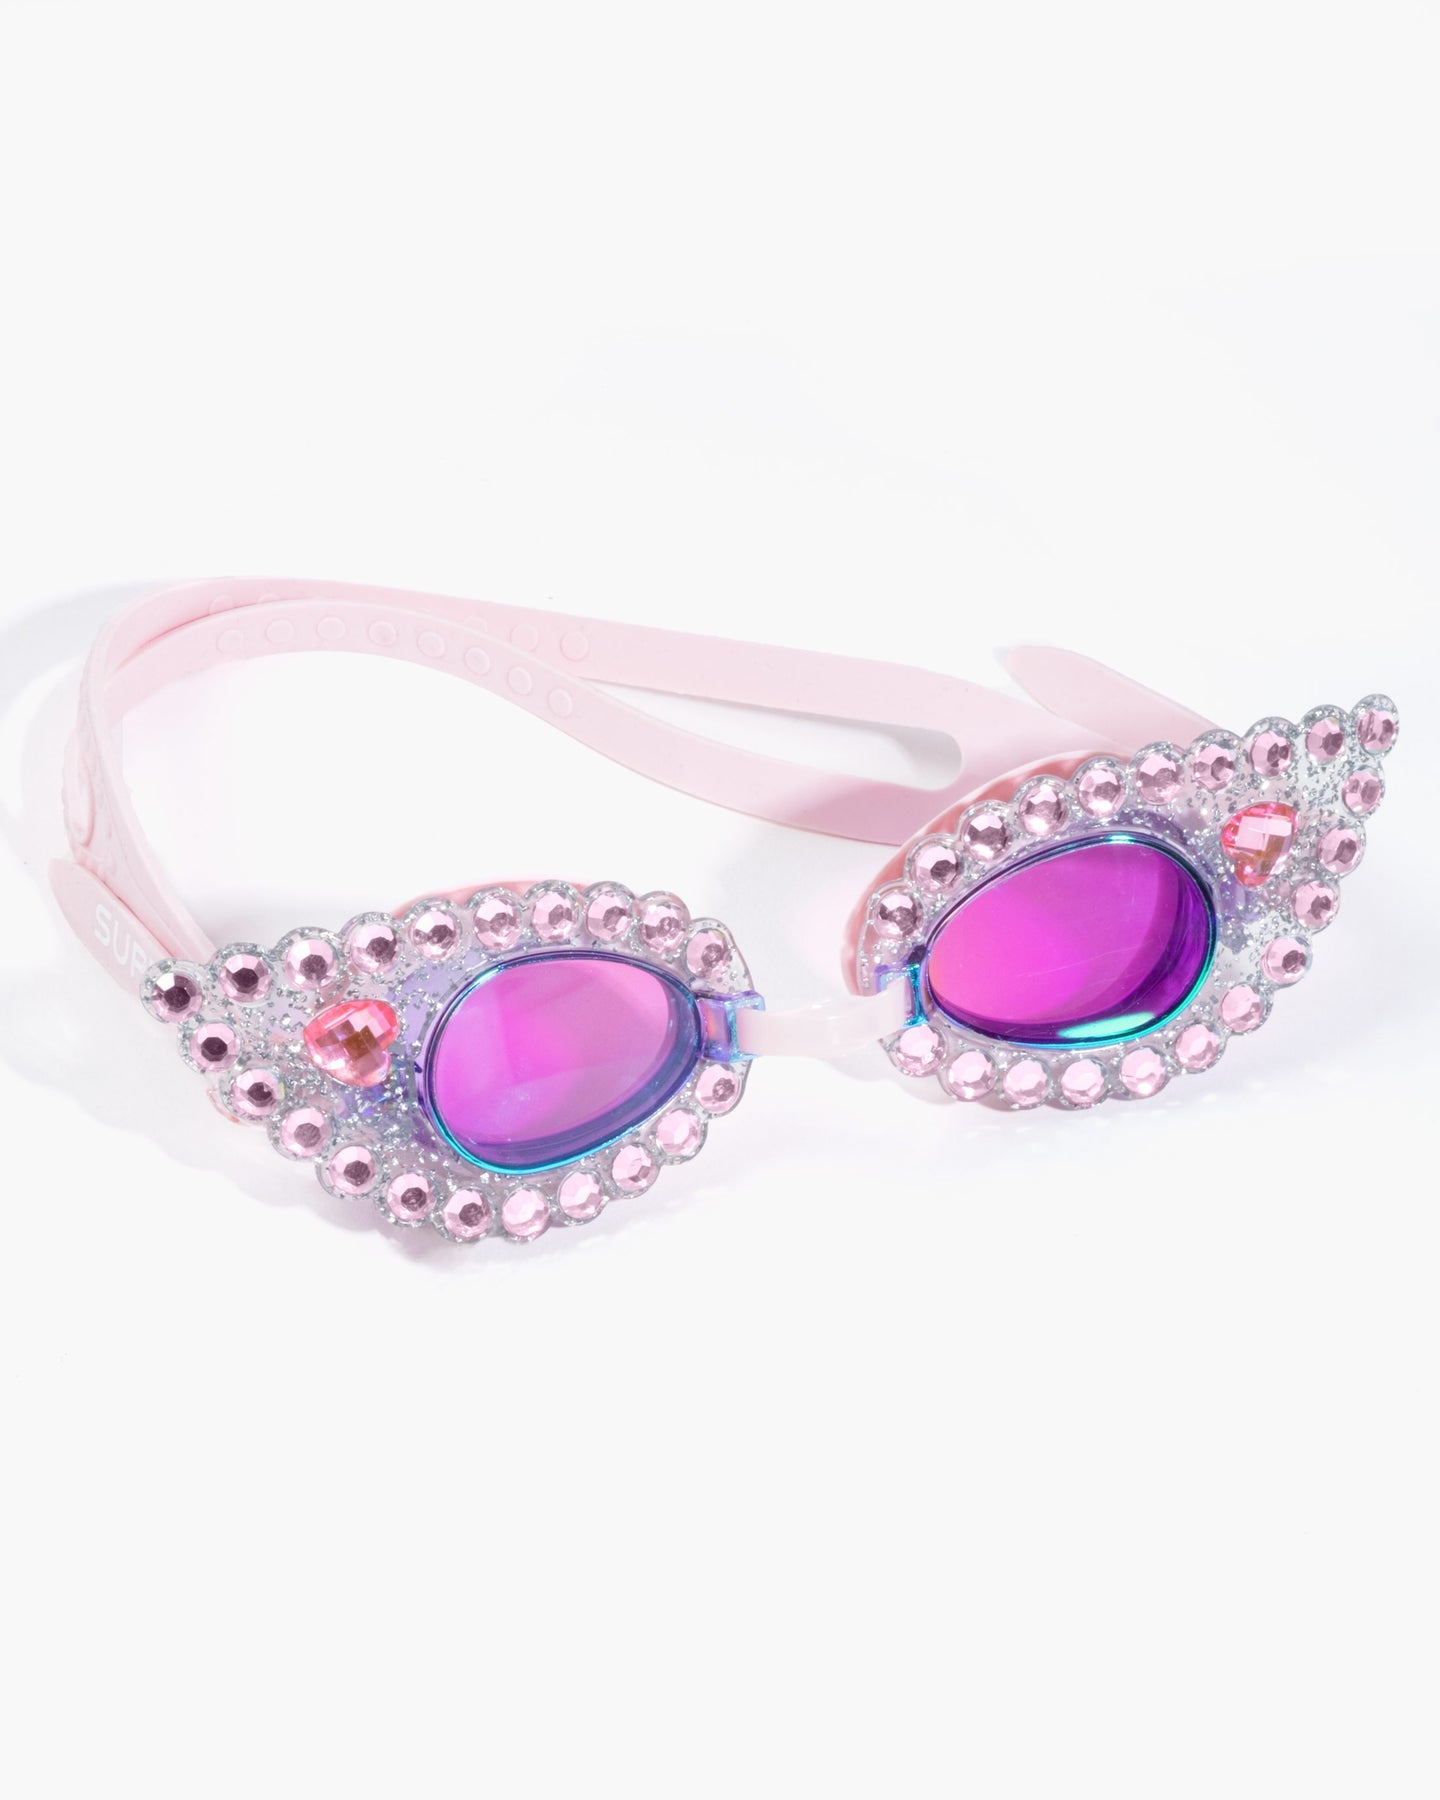 Pink Splash Goggles - Twinkle Twinkle Little One